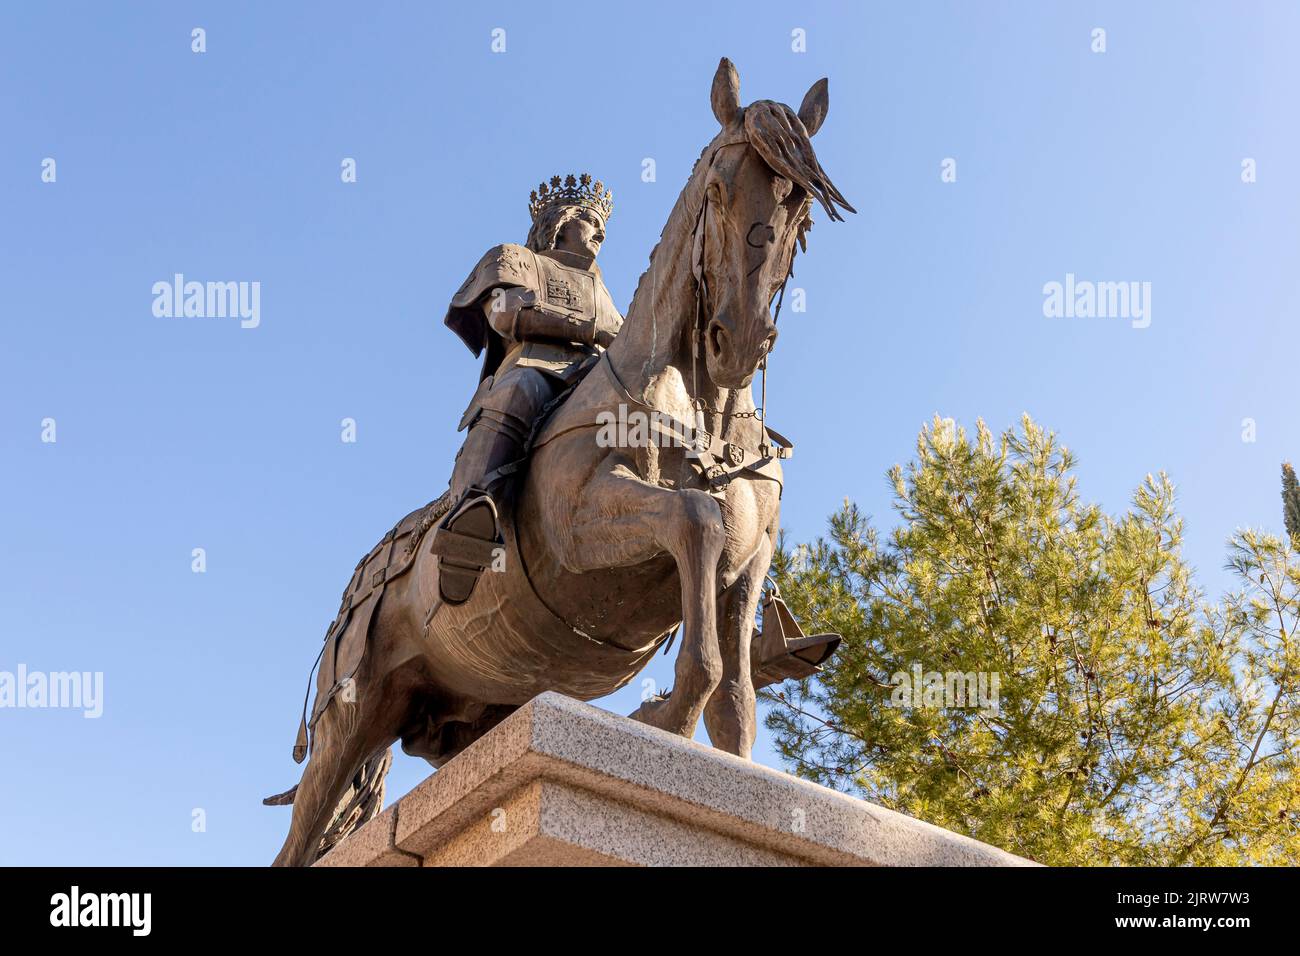 Ciudad Real, España. Monumento al rey Juan II de Castilla (Juan II de Castilla), que le dio a Ciudad Real el estatus de ciudad, en la calle Pablo Picasso Foto de stock